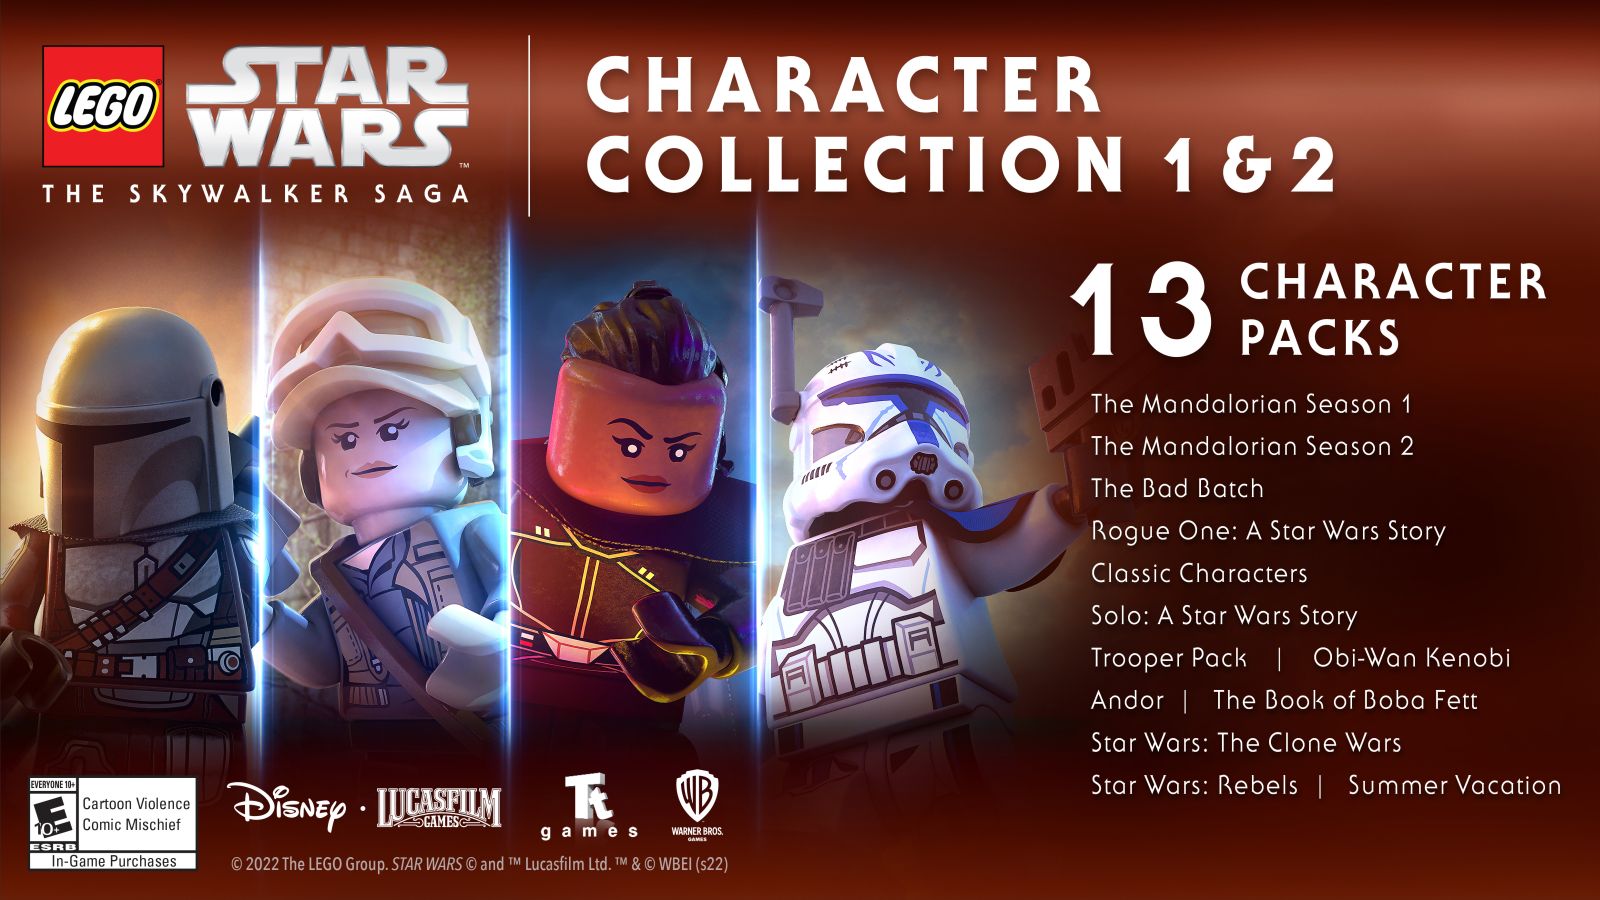 LEGO® Star Wars™: The Skywalker Saga Rebels Character Pack for